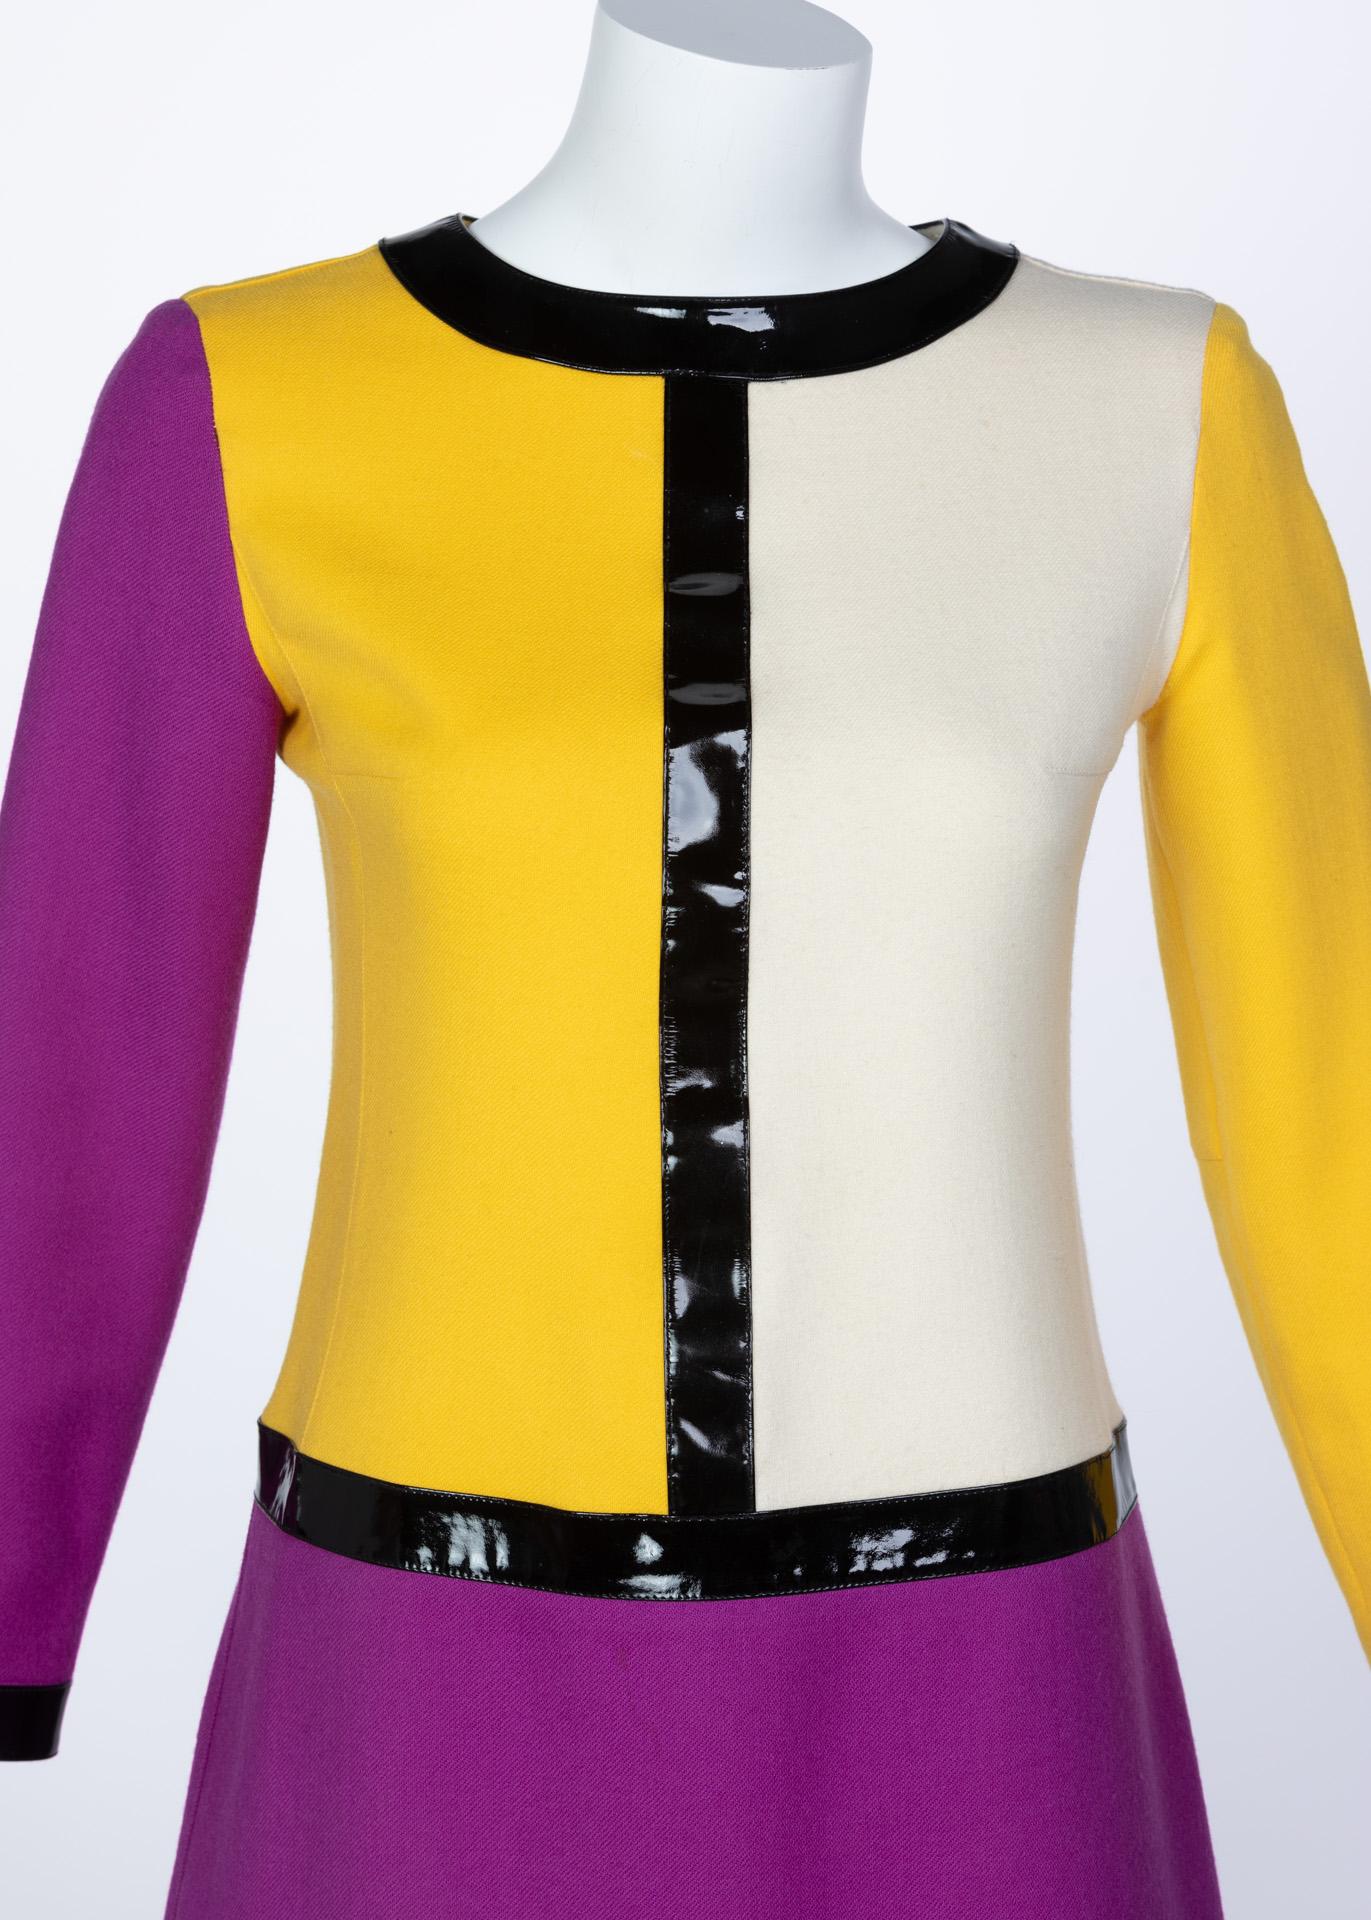 Courrèges Wool Color Block Patent Leather Mondrian Mini Dress, 1960s 2